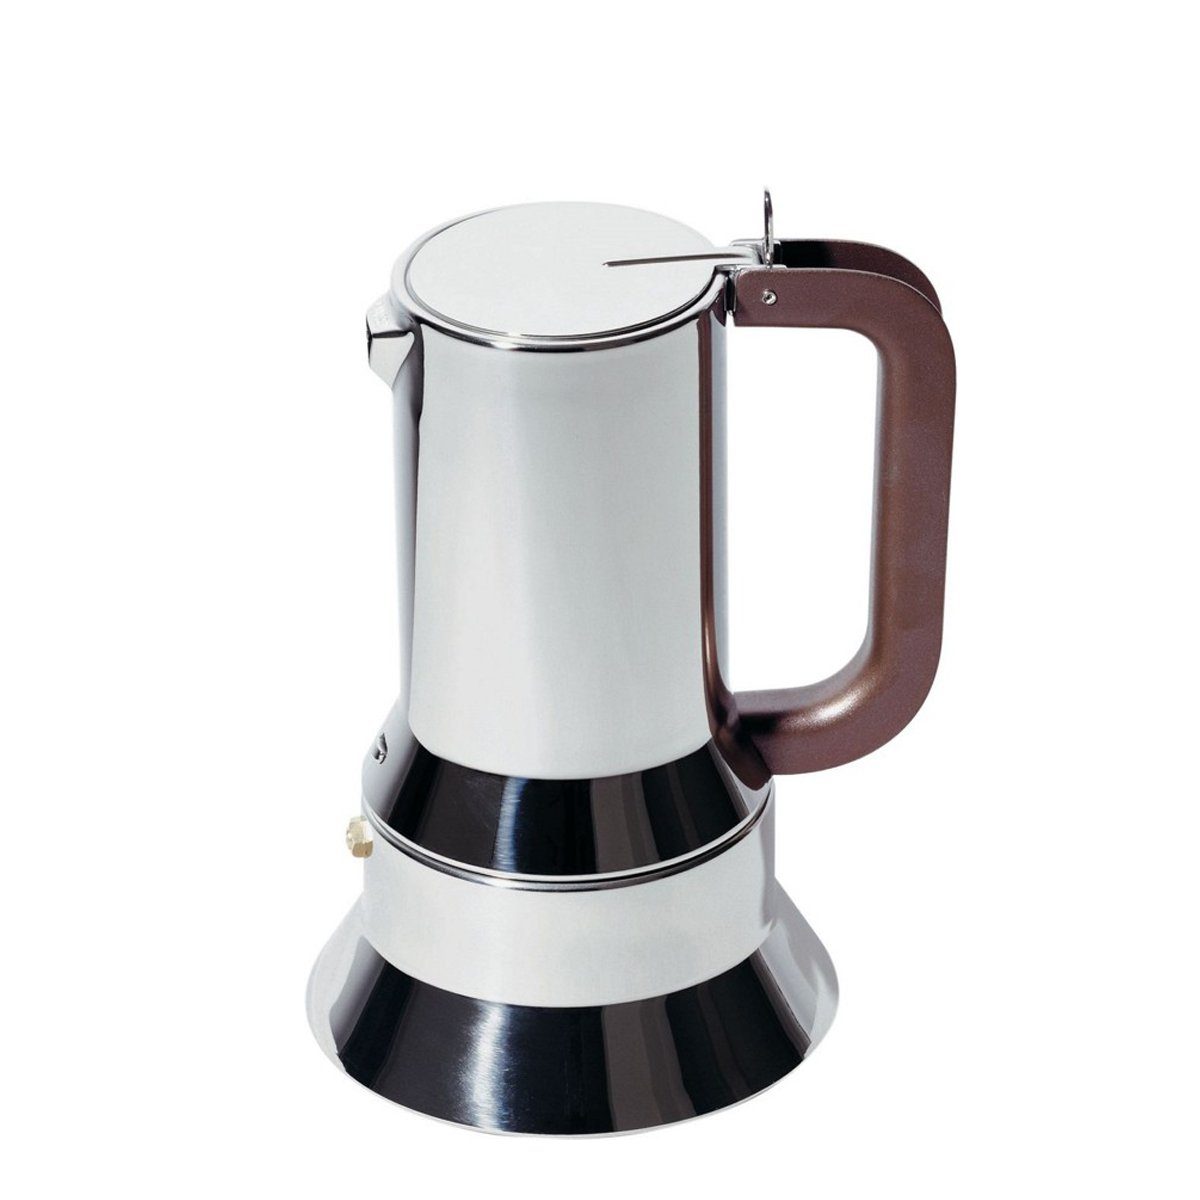 Alessi Espressokocher Espressokocher SAPPER 15cl, 0.15l Kaffeekanne, Für 1 bis 3 Tassen Espresso